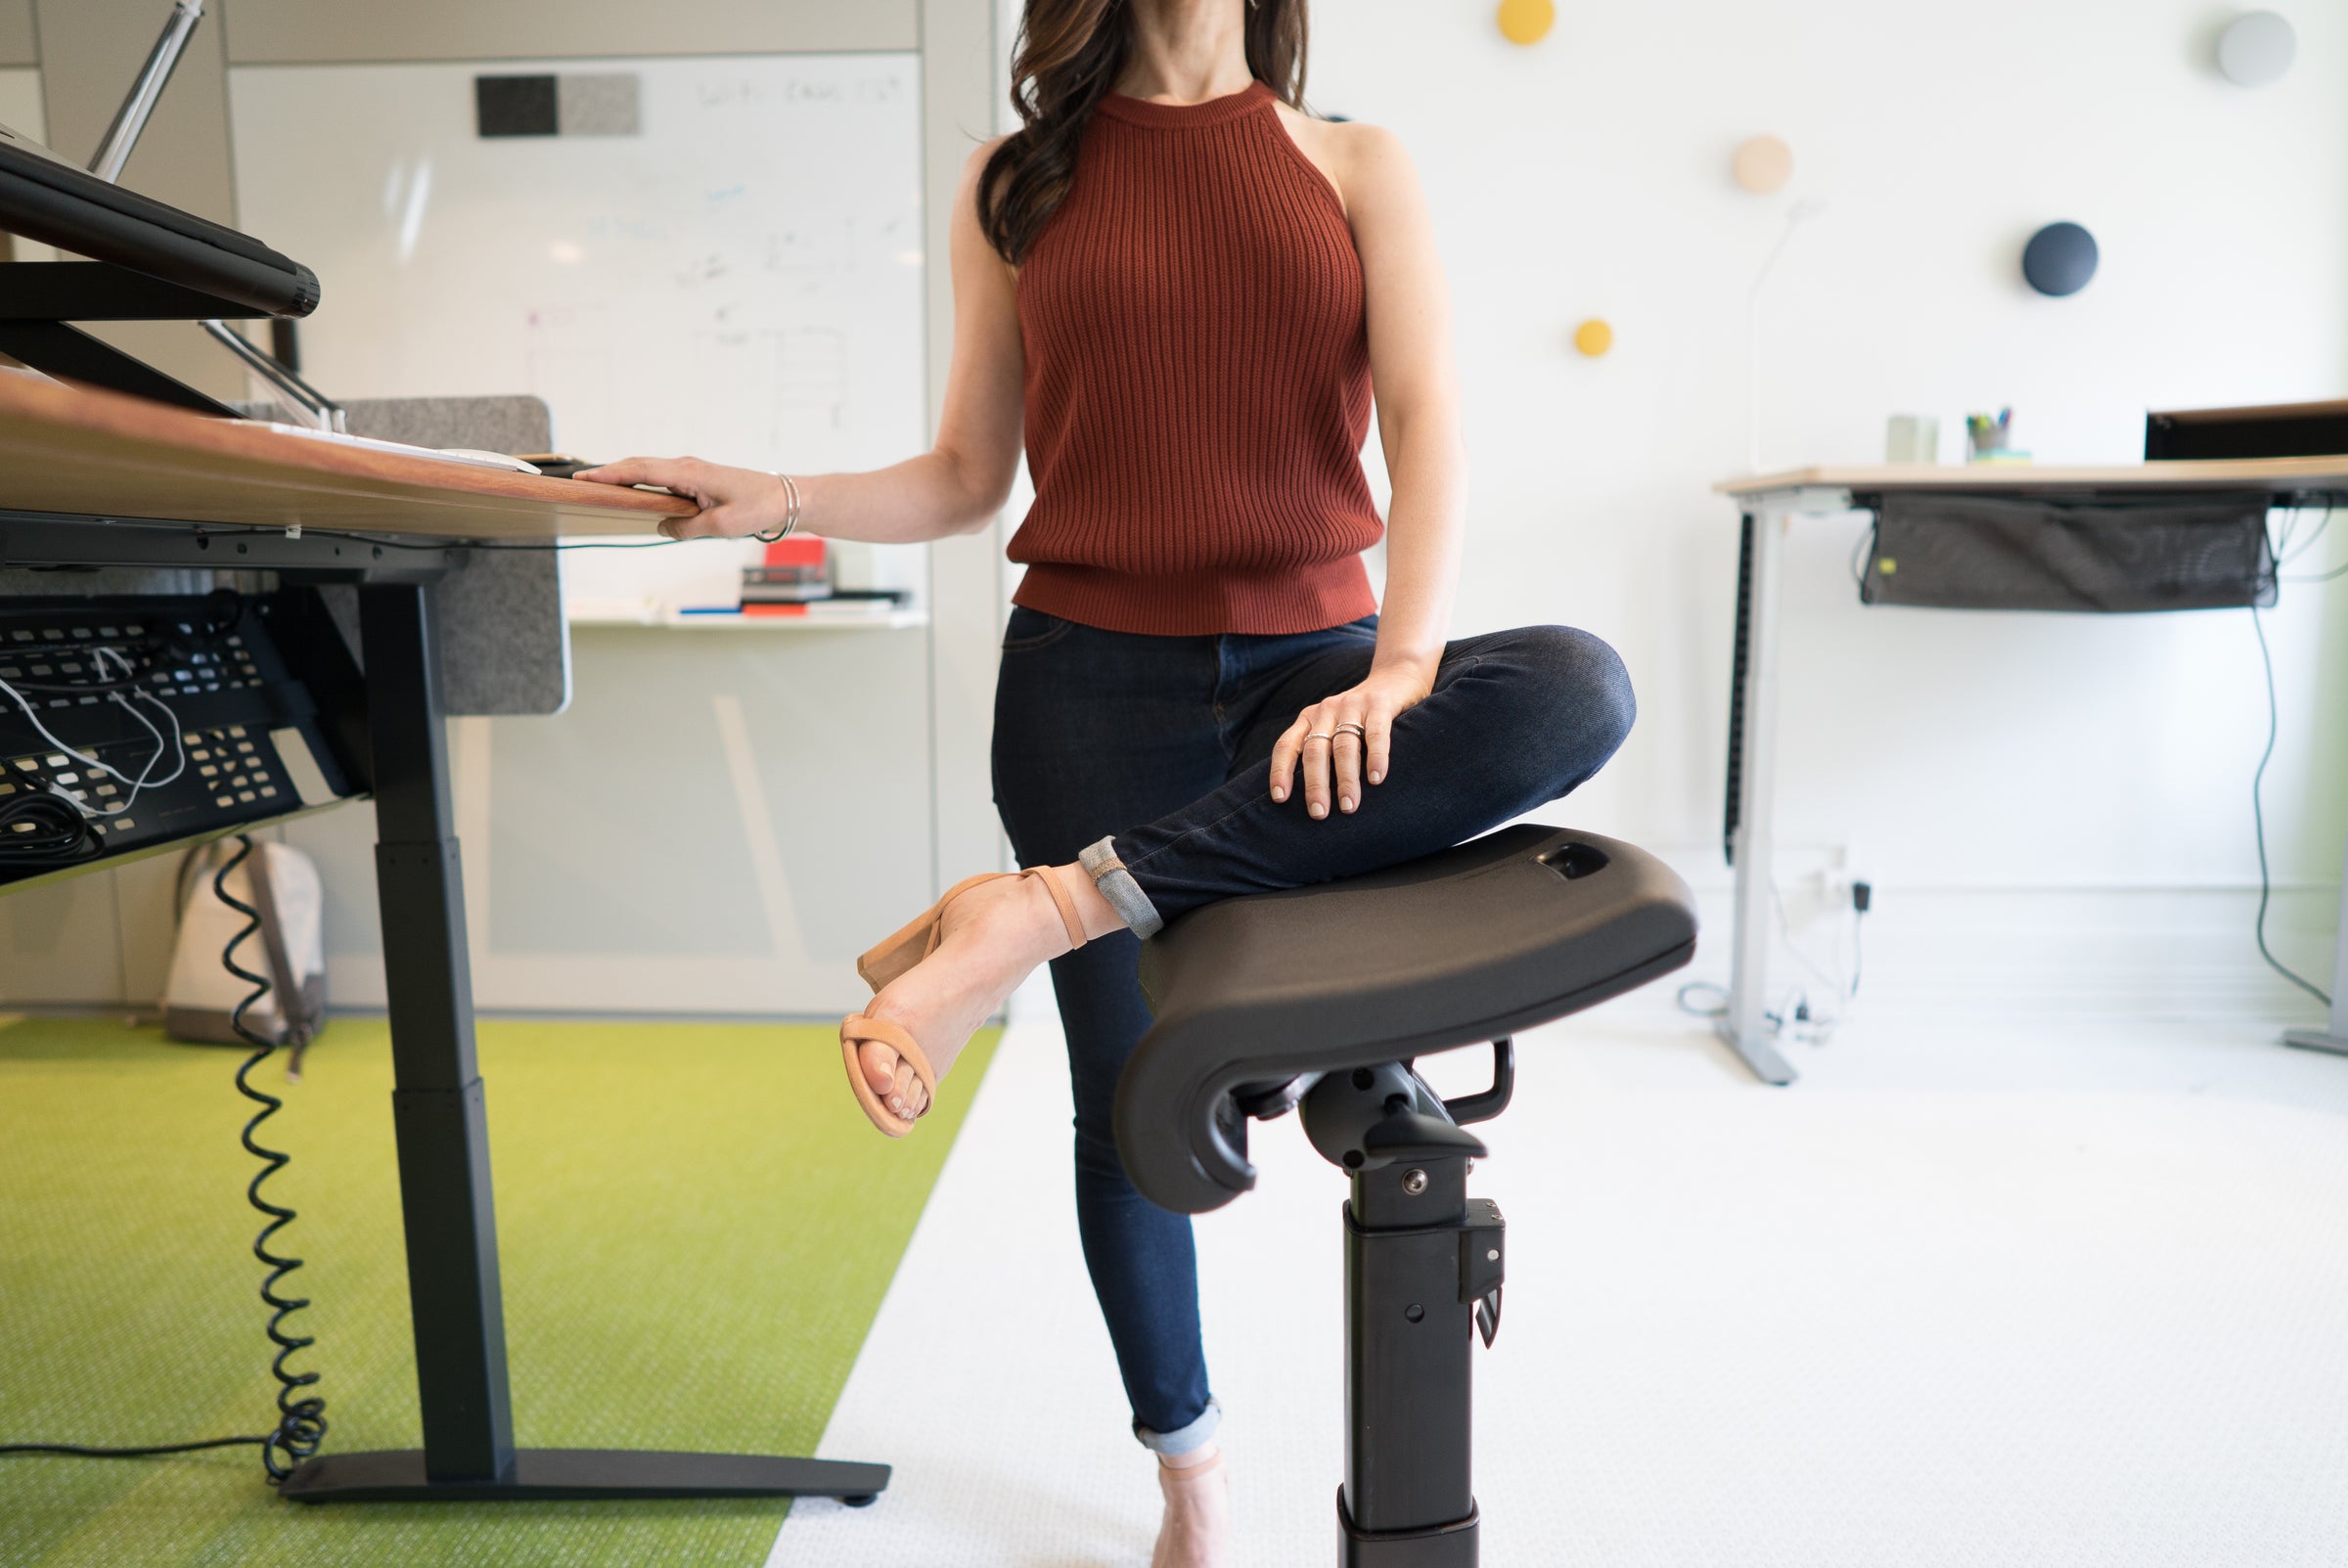 LeanRite Elite - Ergonomic Standing Chair Designed for Preventing Back Pain